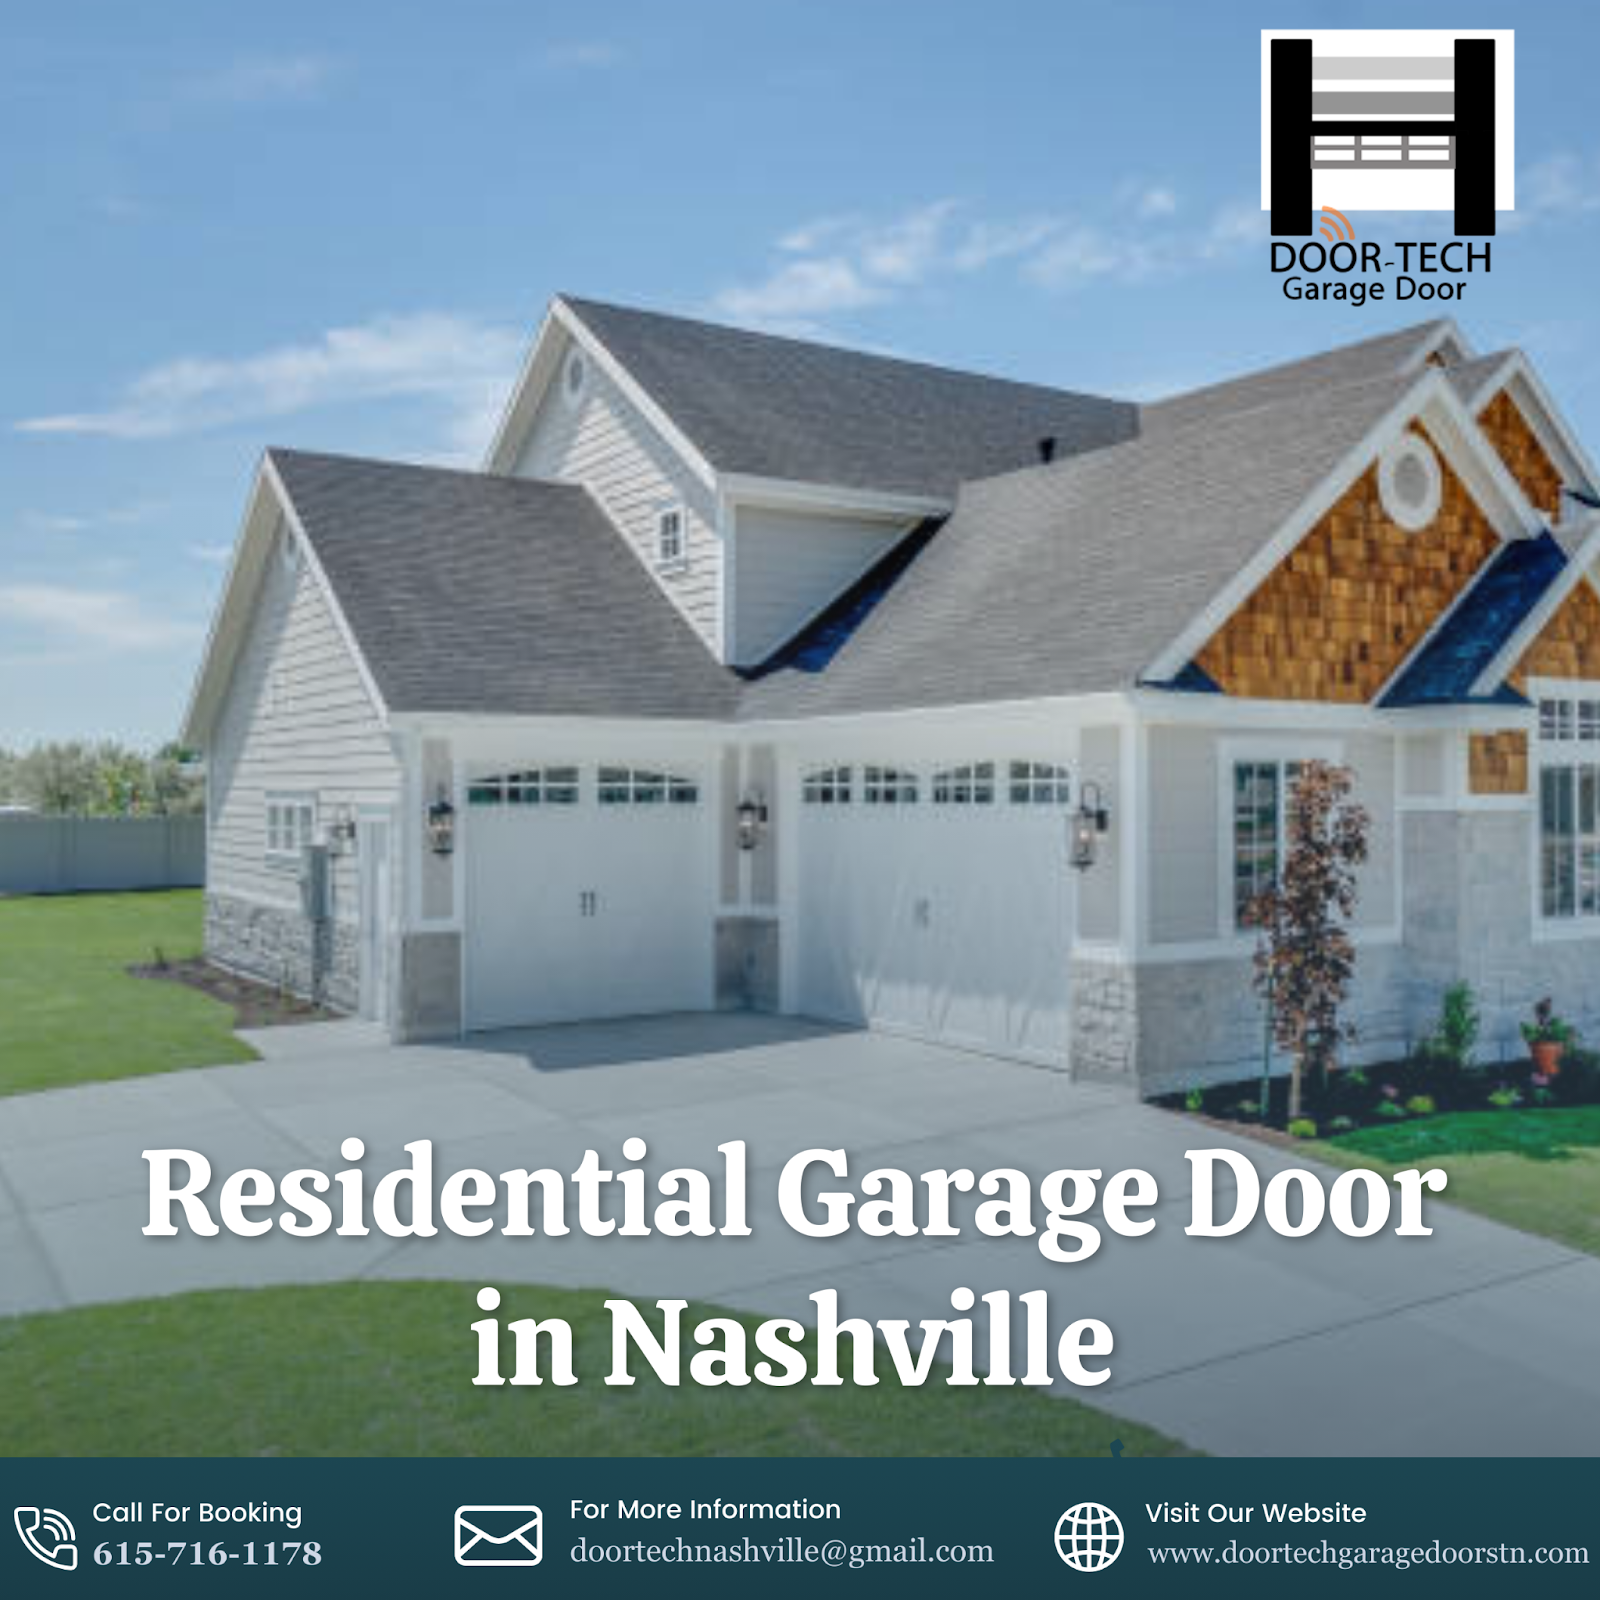 Residential Garage Doors in Nashville